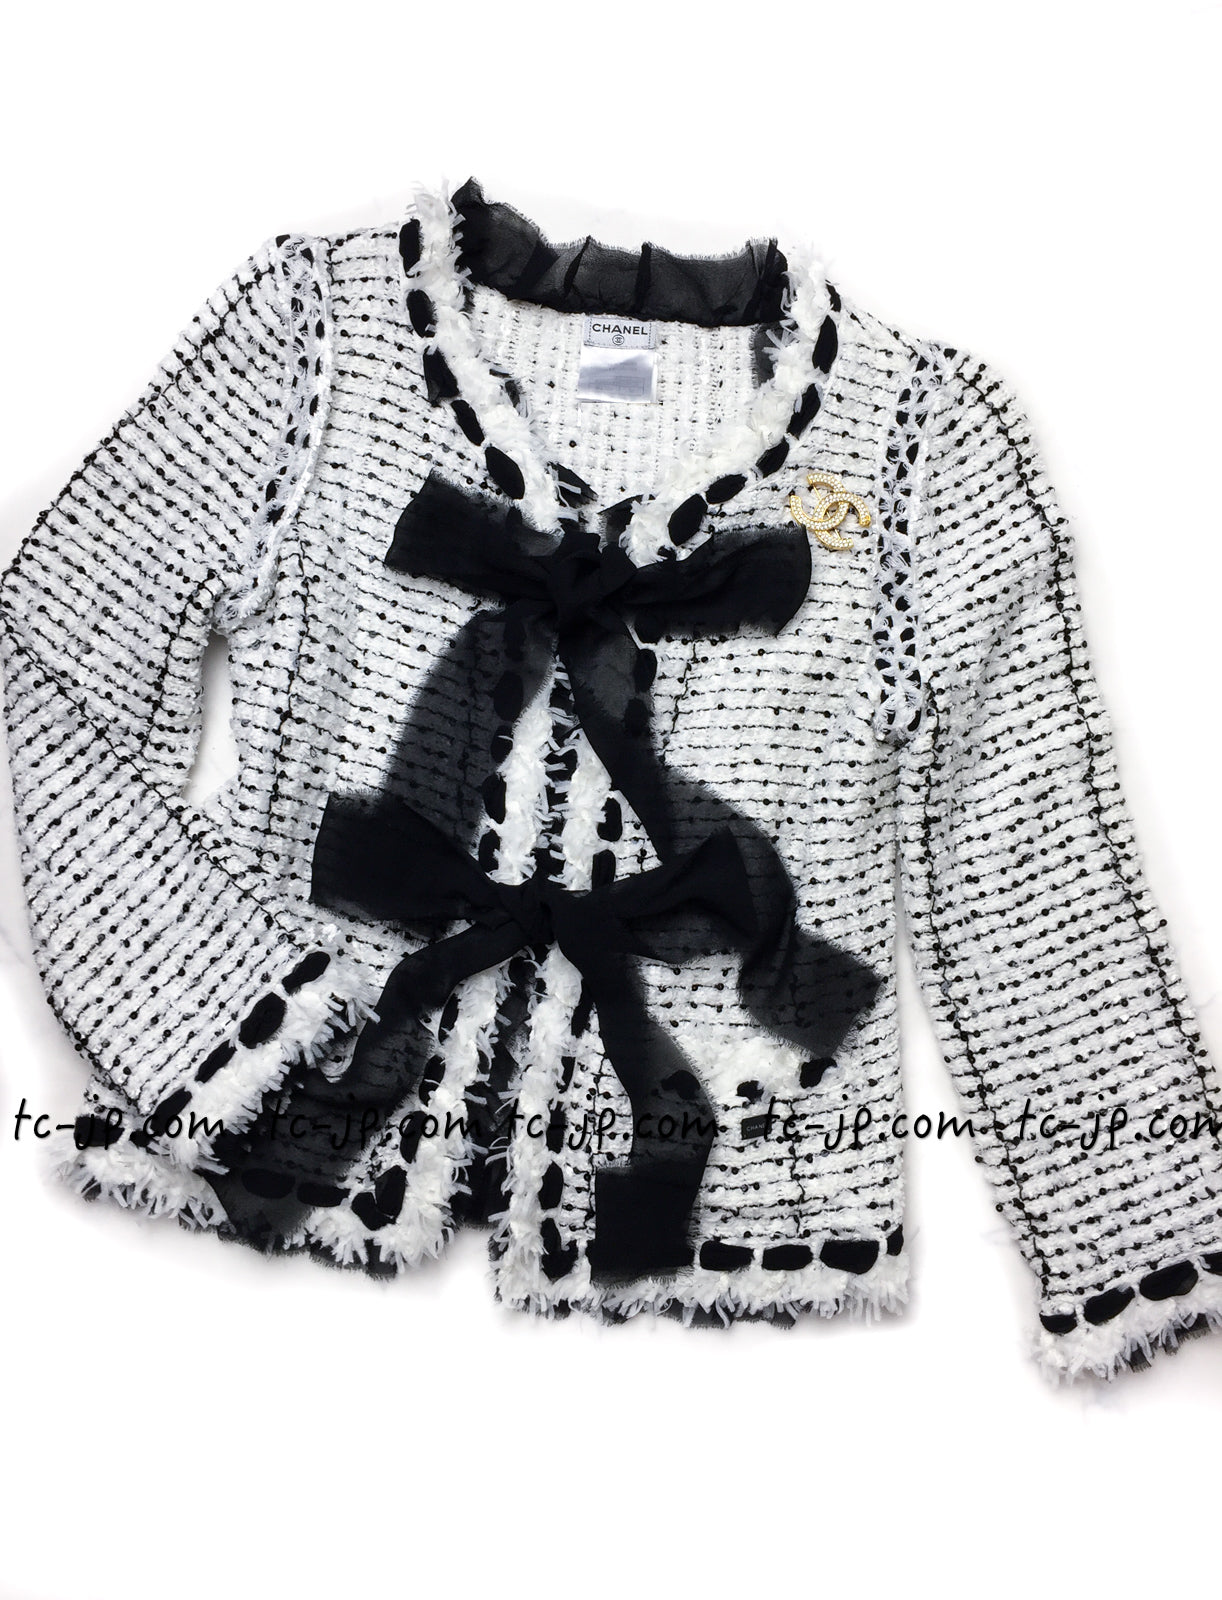 CHANEL 05S White Black Tweed Cardigan Jacket Skirt 34 36 38 42 シャネル ホワイト・ブラックリボン・ツイード・カーディガン・ジャケット・スカート 即発